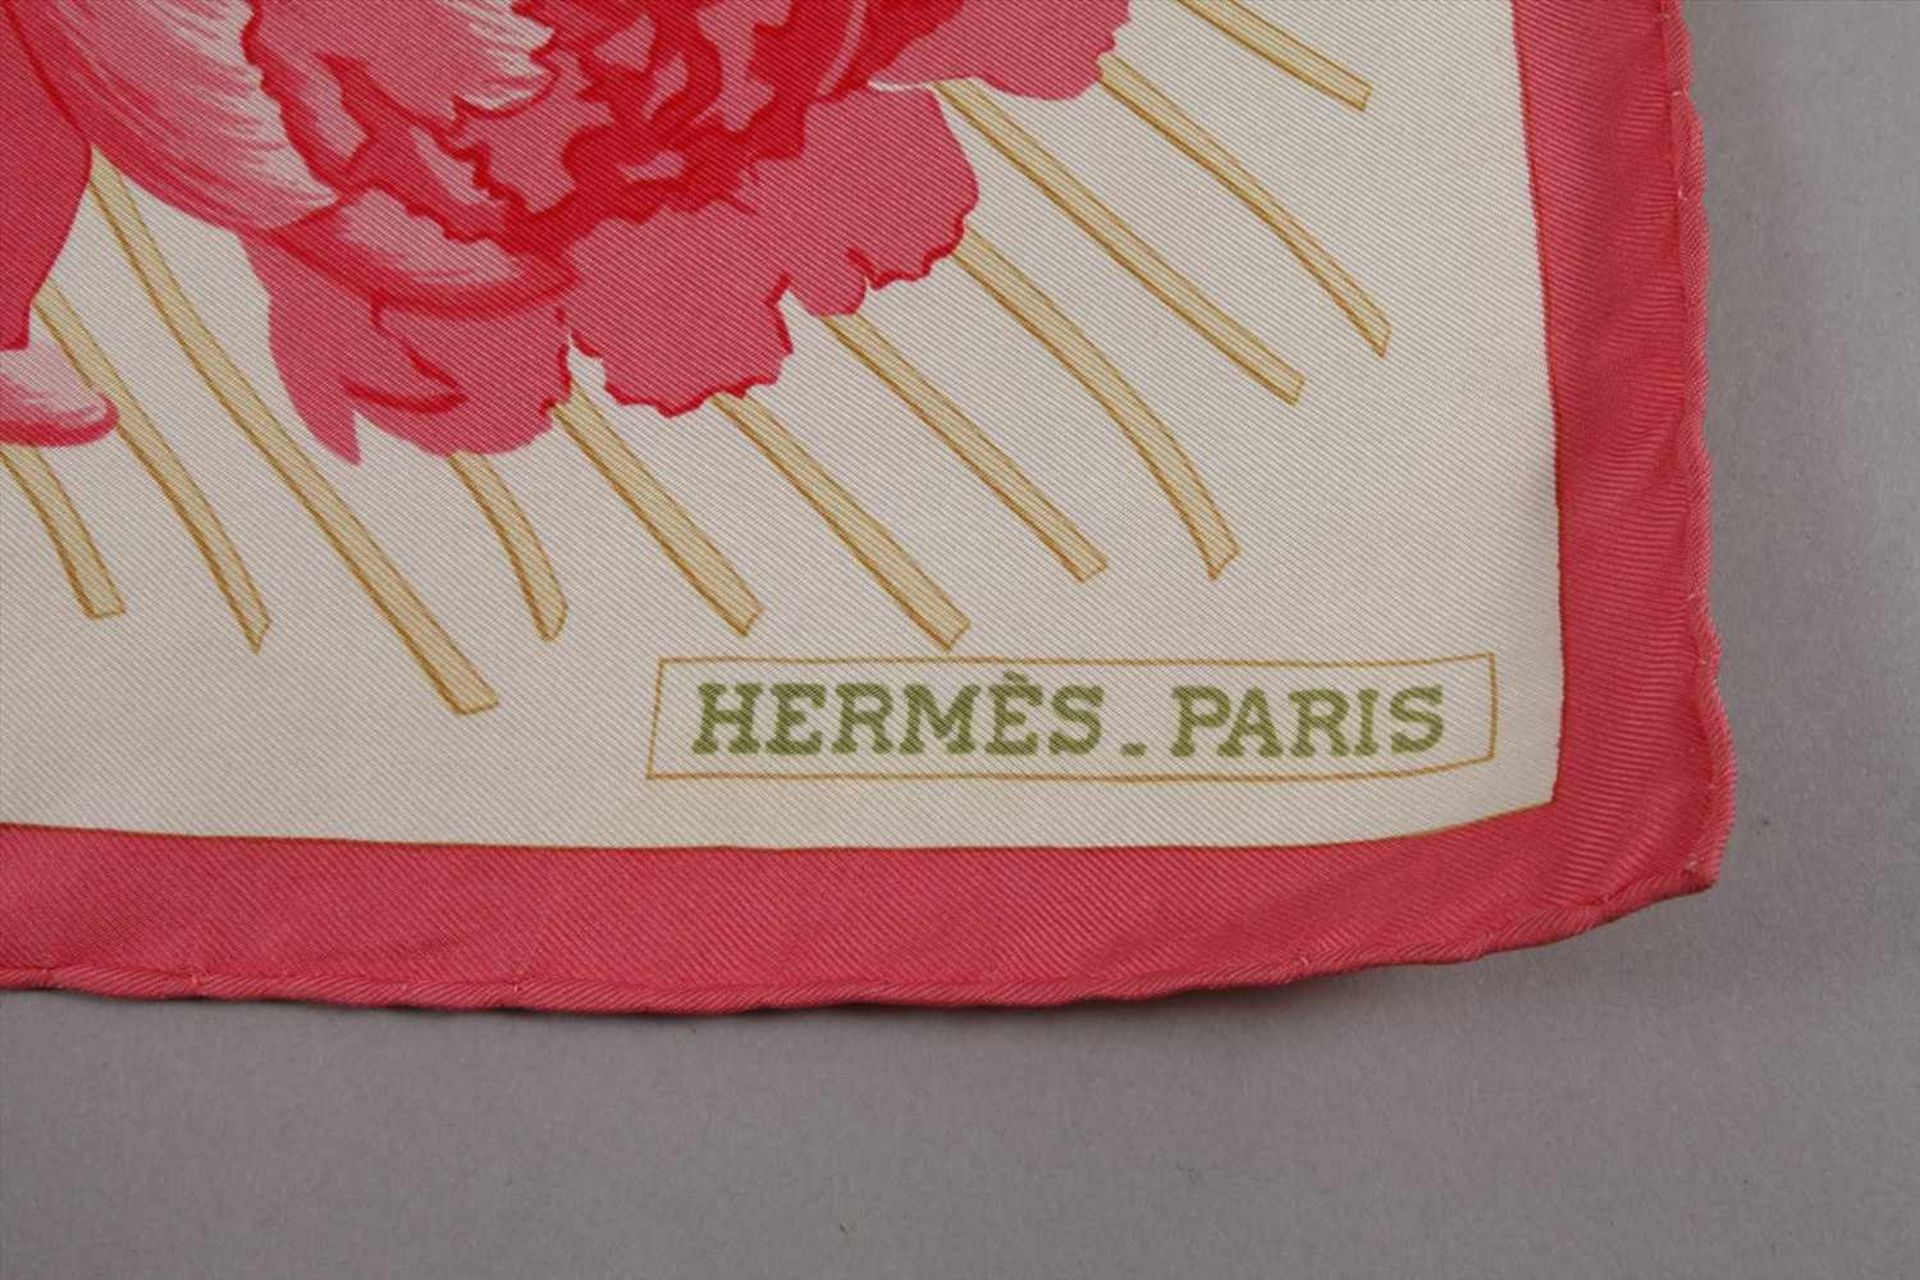 Seidentuch Hermès "Les Pivoines"Entwurf Christiane Vauzelles 1978, Reedition, gemarkt, Seidentuch - Bild 3 aus 3